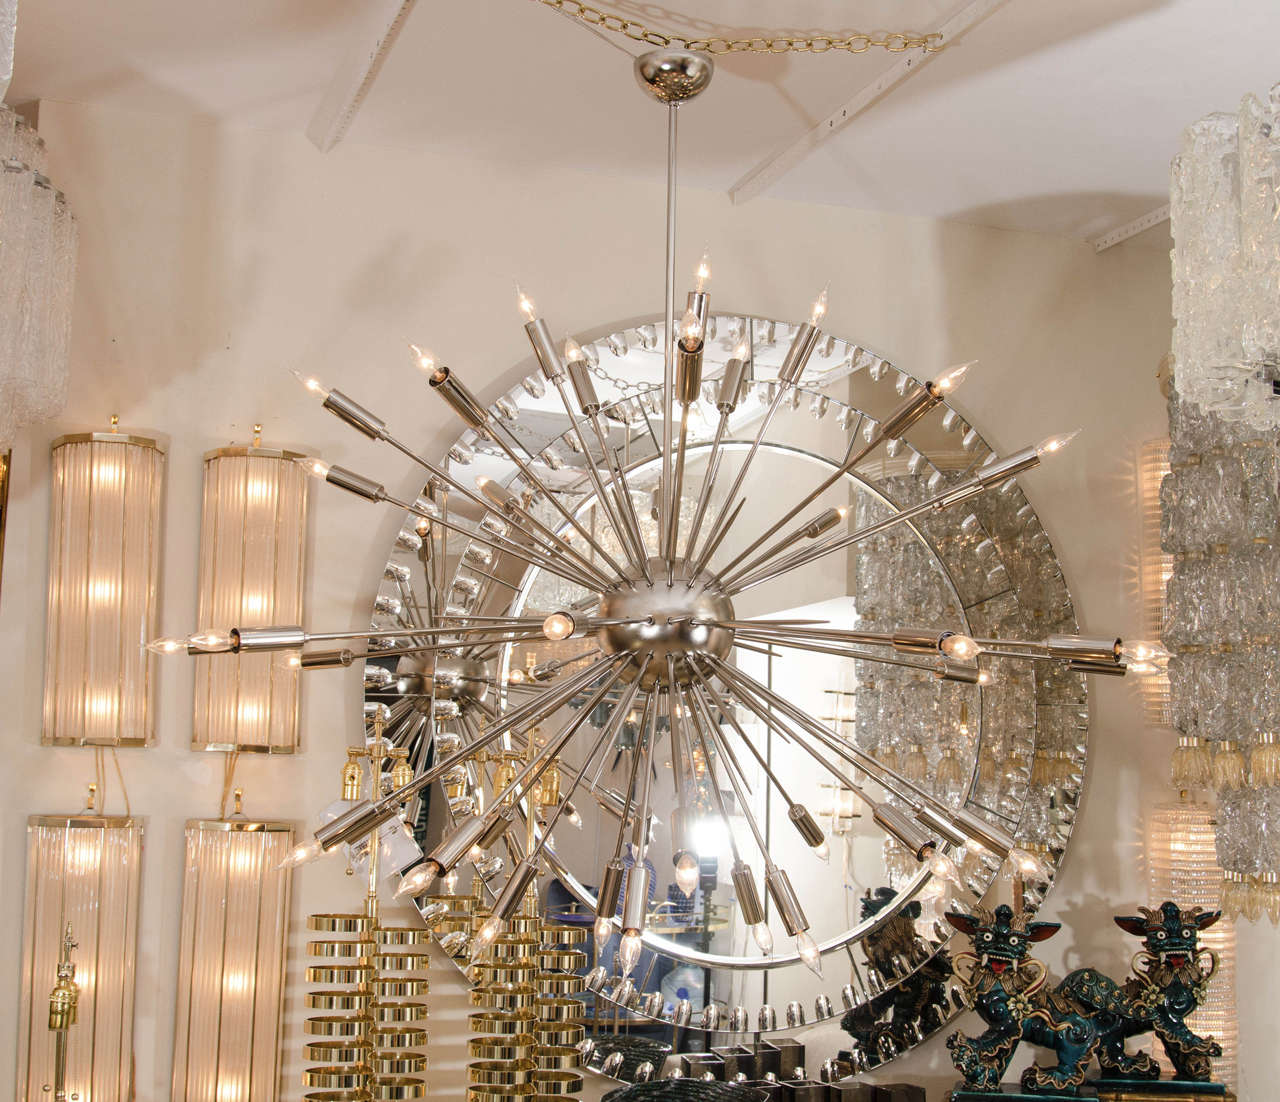 Monumental polished nickel Sputnik style chandelier.